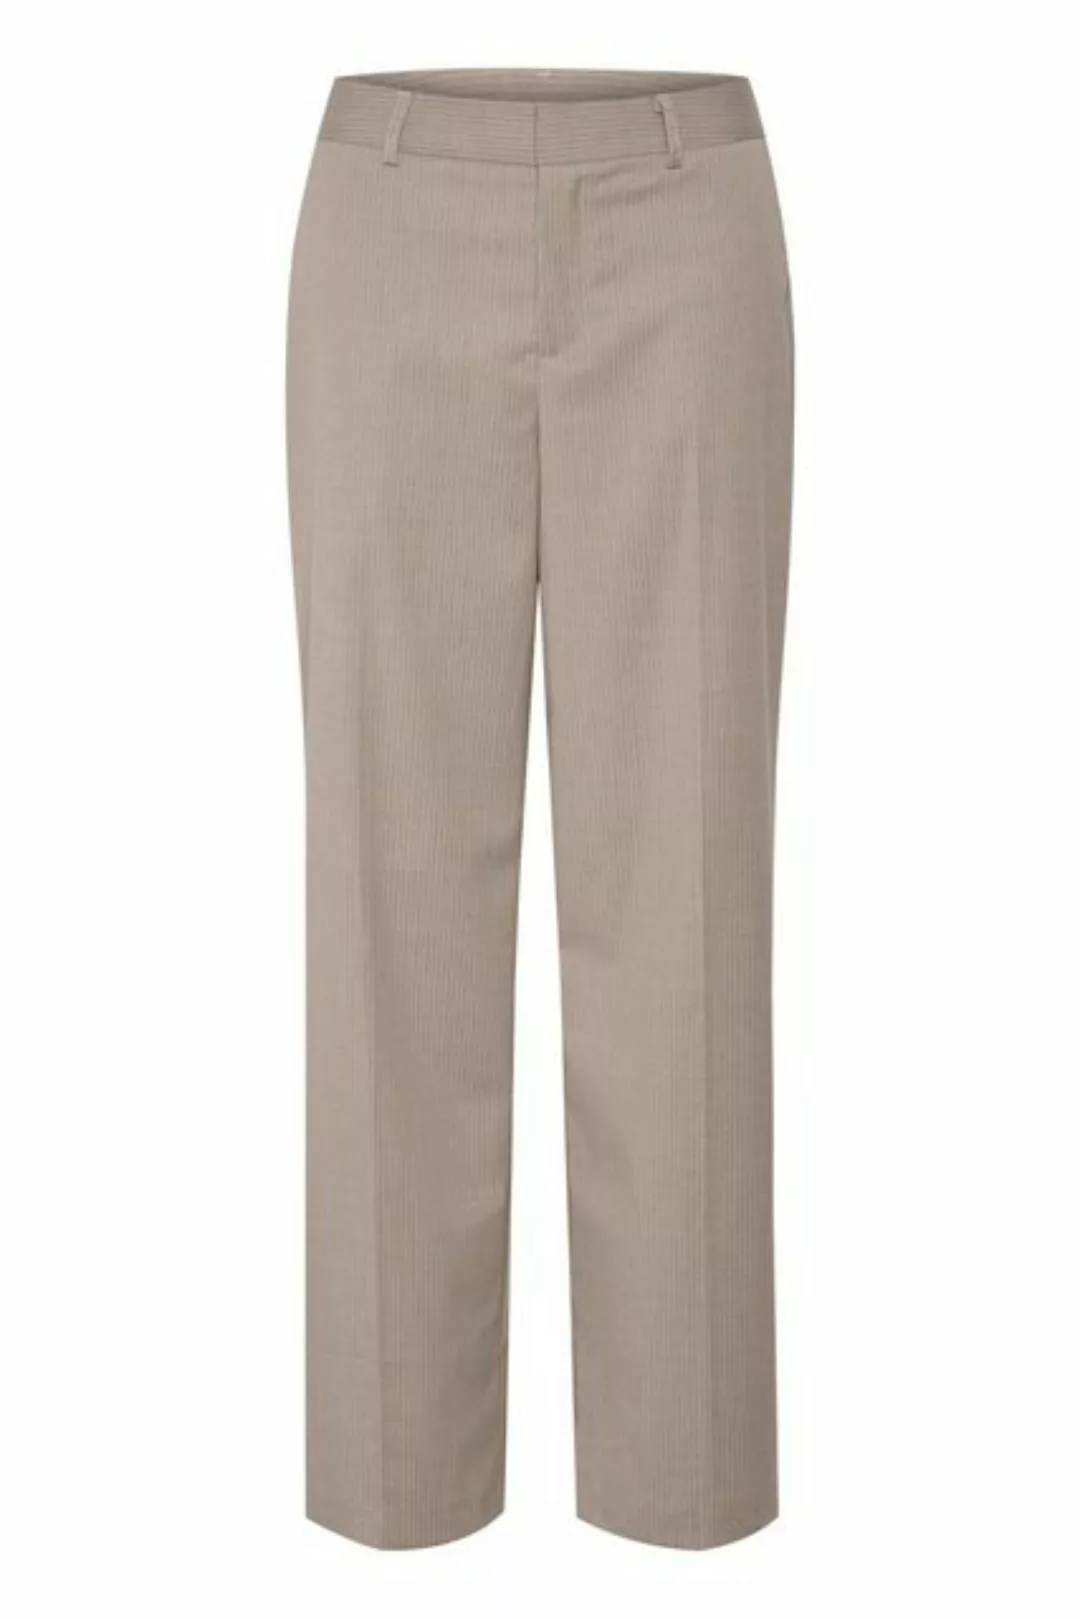 KAFFE Anzughose Pants Suiting KAsolena günstig online kaufen